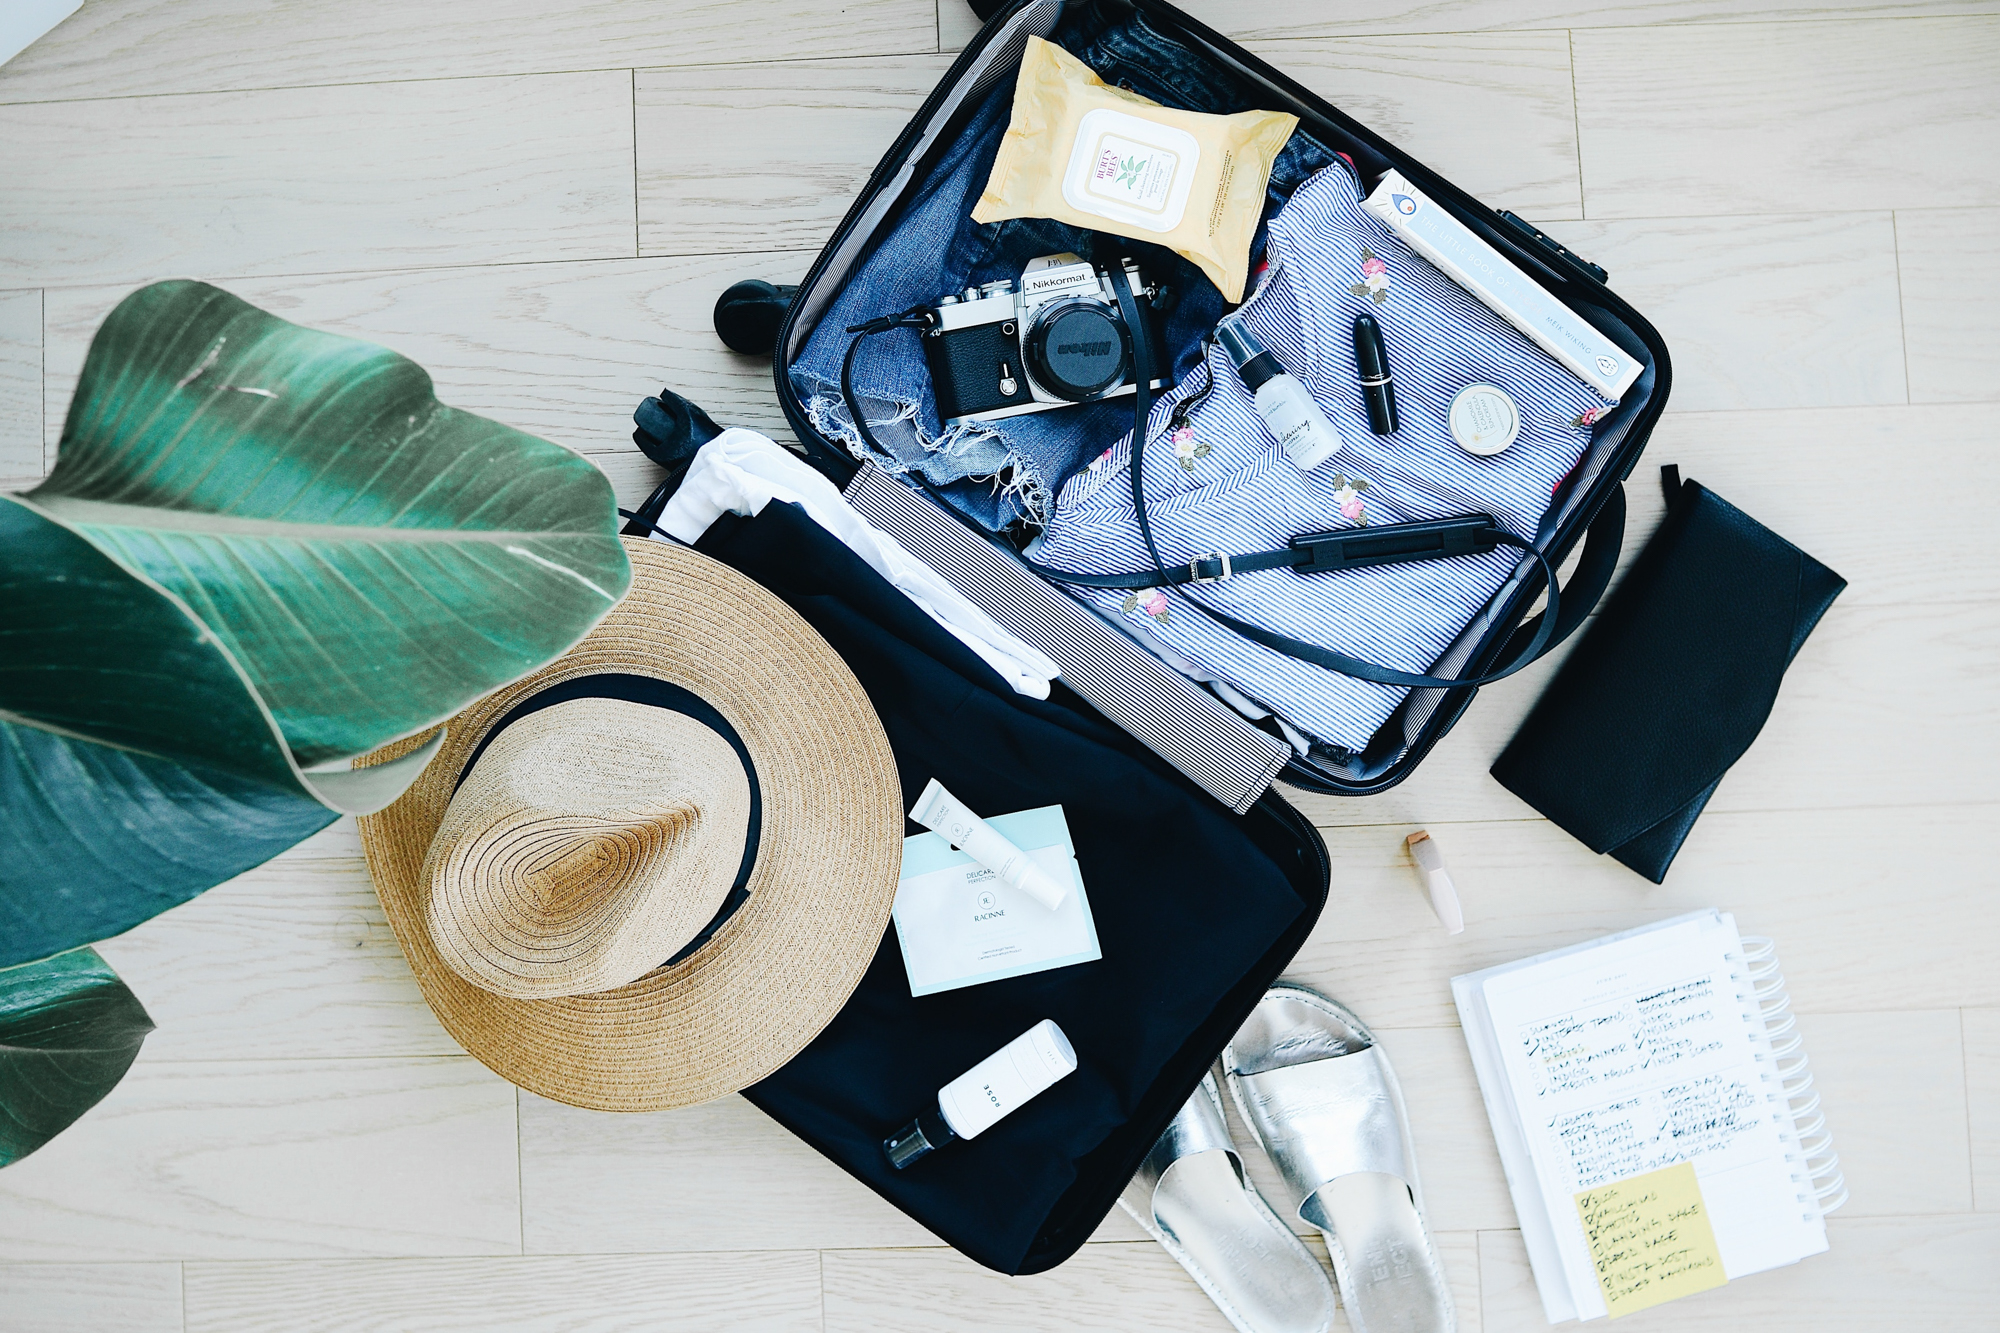 Les accessoires de voyage indispensables dans mon bagage de cabine •  MayBanton Blog Voyage